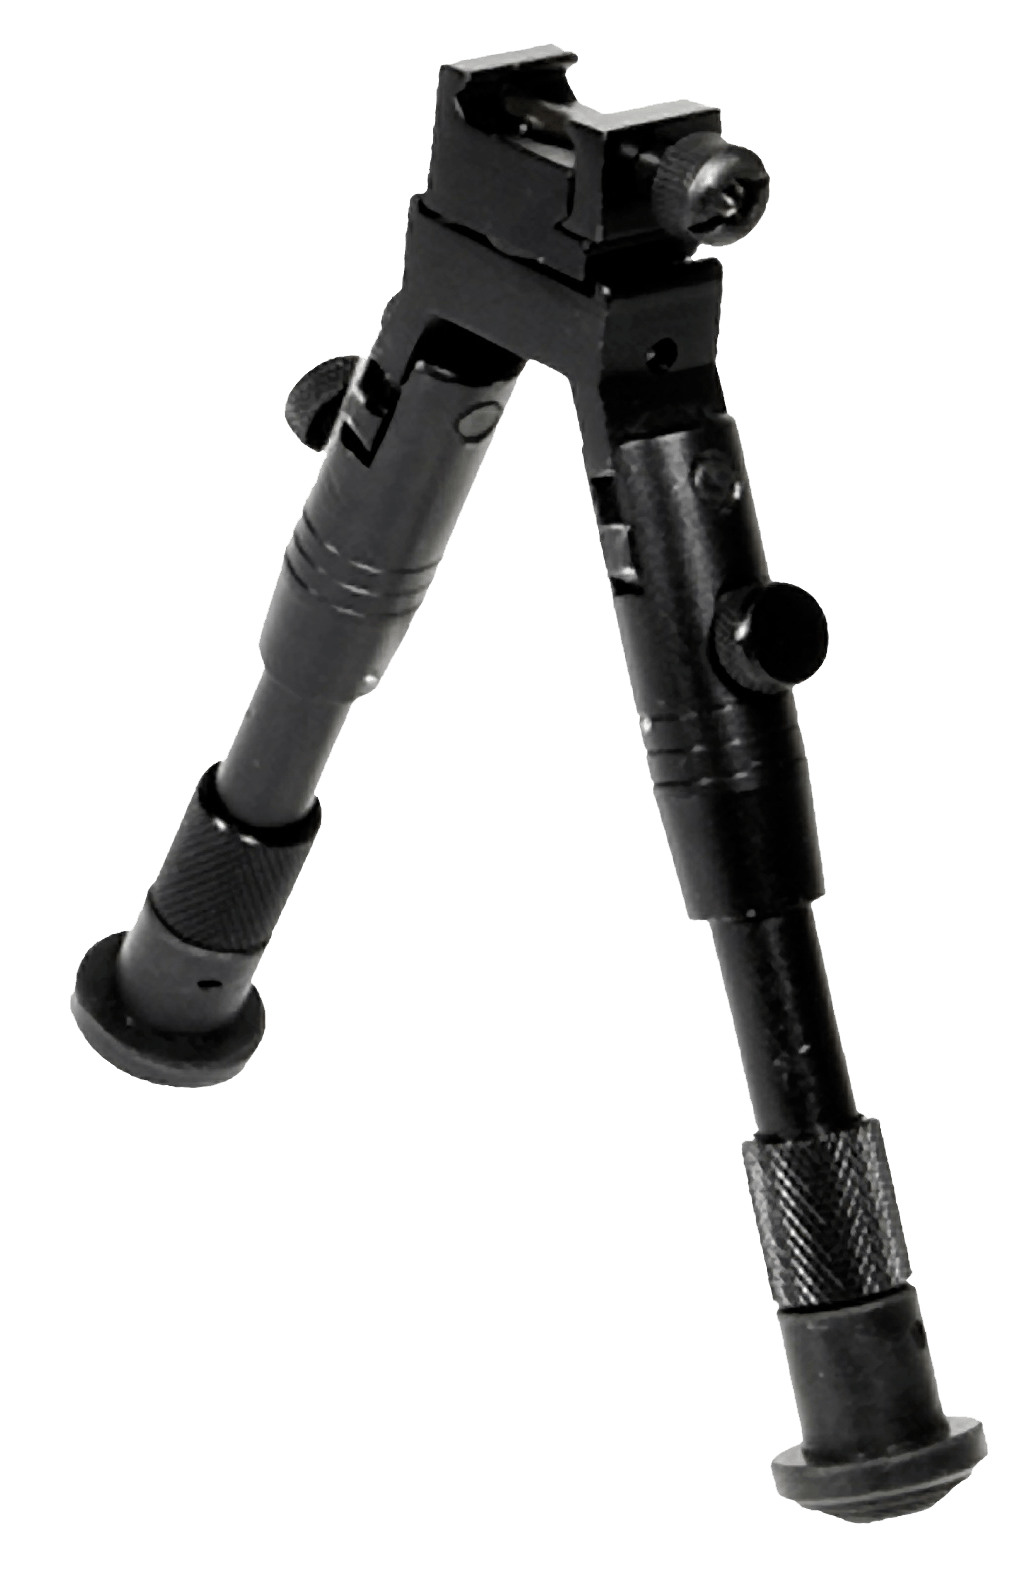 UTG Utg Shooter's, Utg Tl-bp28s       Swat Bipod   6.2- 6.7 Firearm Accessories